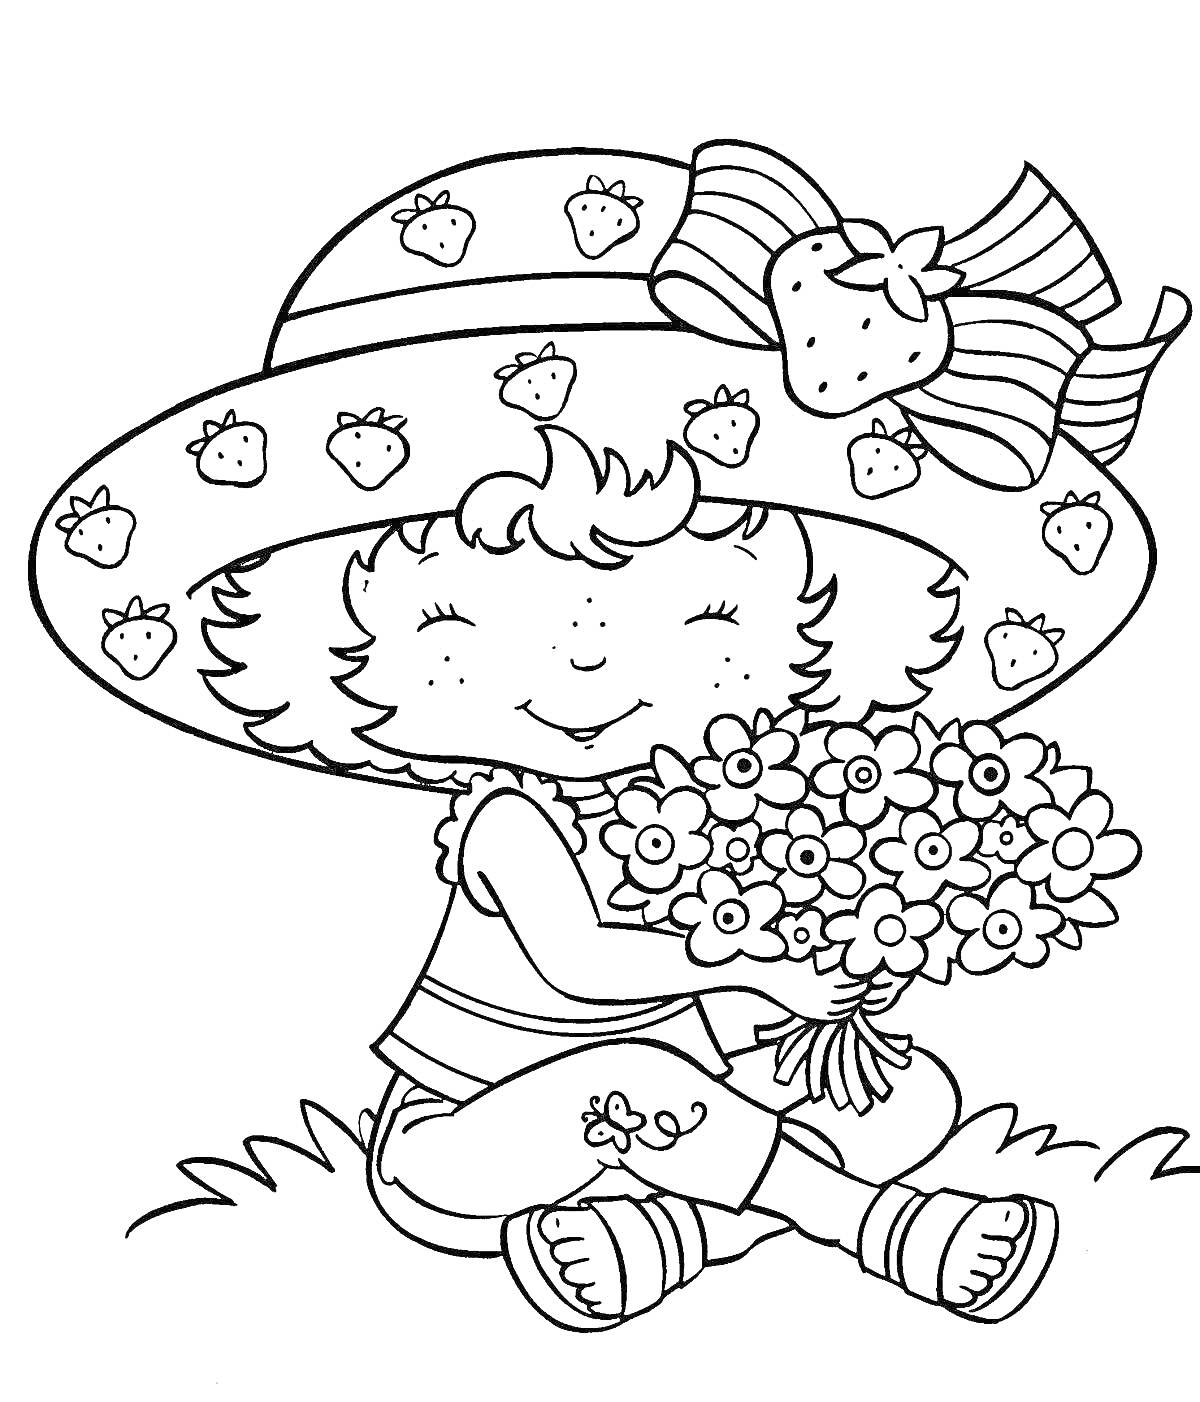 Раскраска Девочка в соломенной шляпе с рисунком клубники и большим бантом, в шортах с вышивкой, босиком, сидящая на траве с букетом цветов в руках